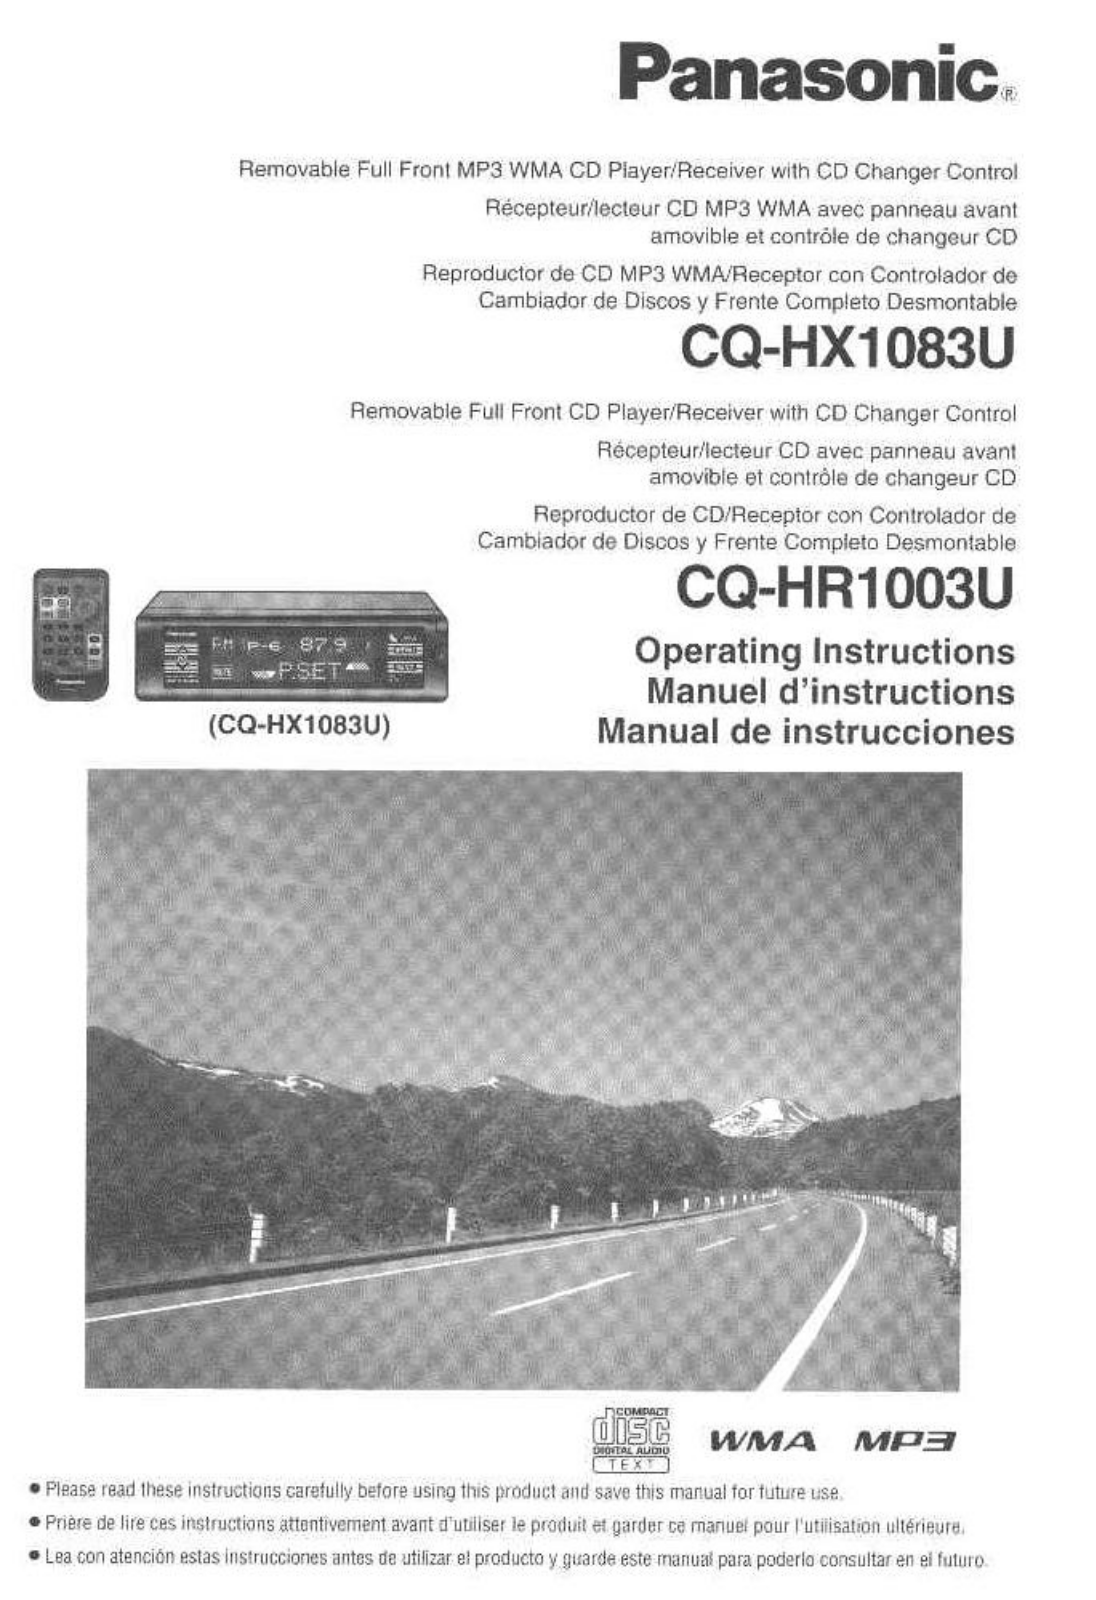 Panasonic cq-hx1083u Operation Manual